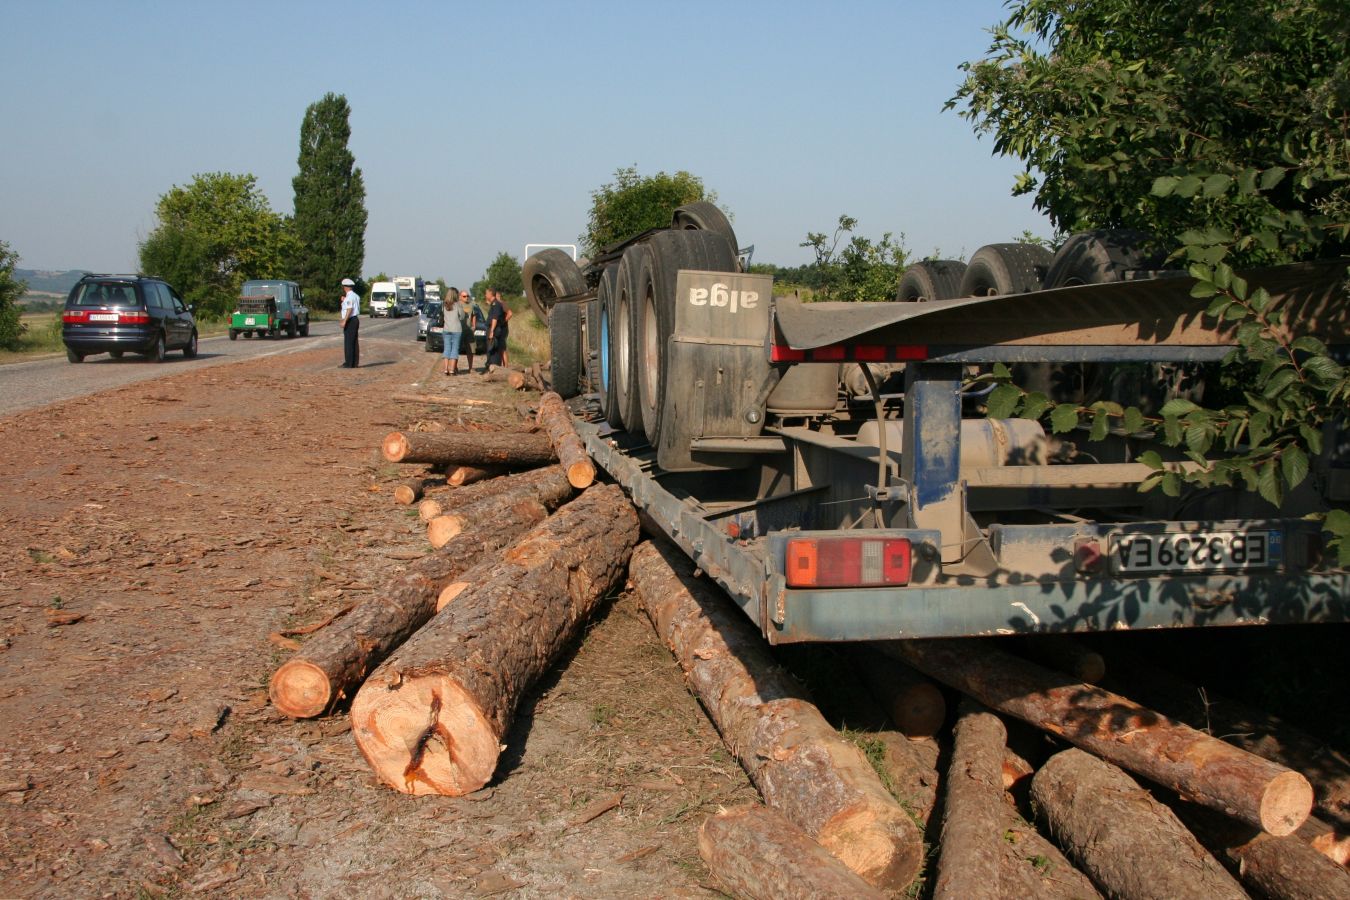 Два акта са за транспортиране на незаконно добити дърва за огрев